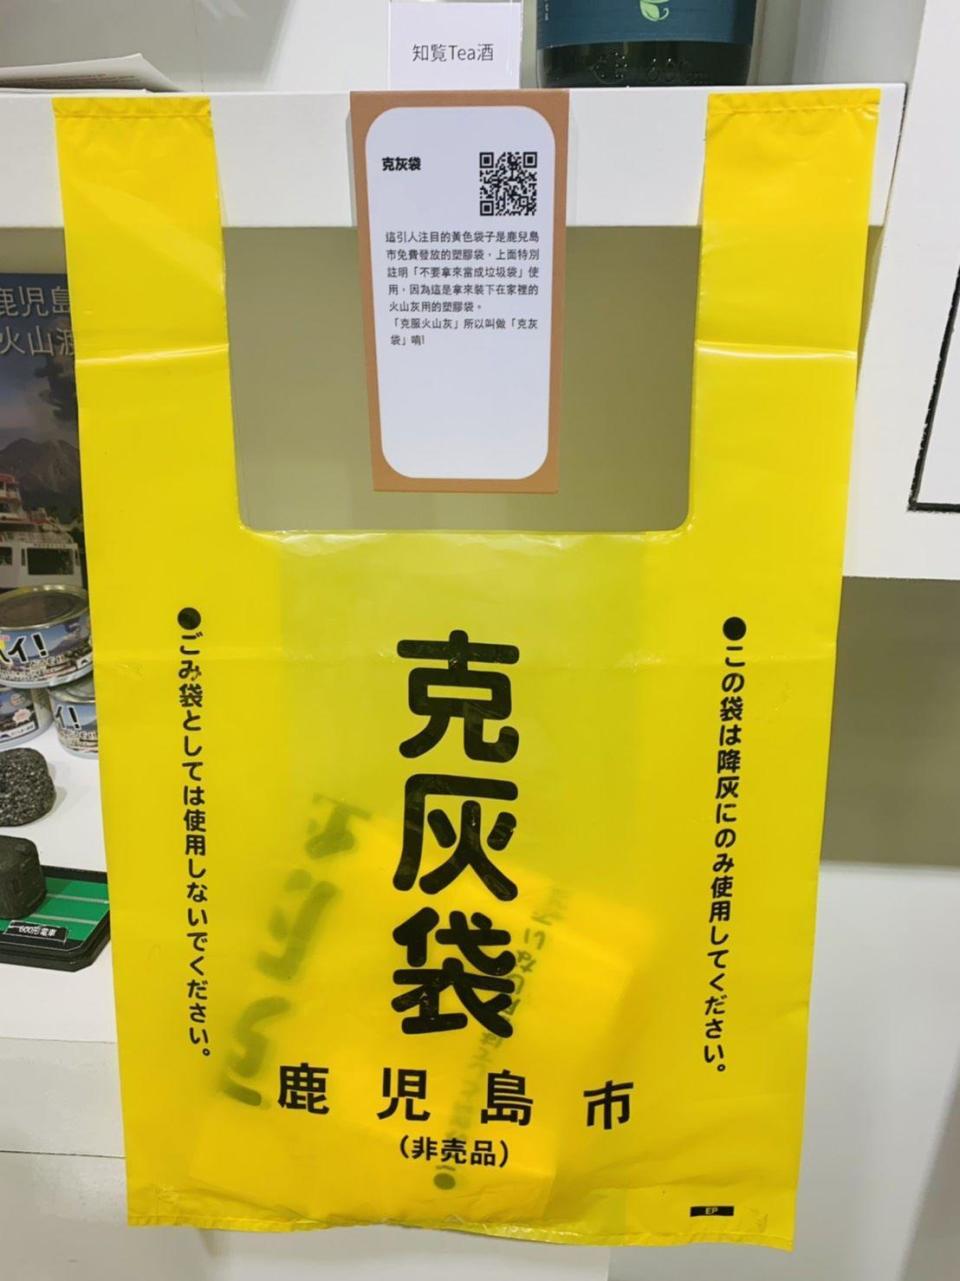 黃澄澄的「克灰袋」是鹿兒島專屬用品。（翻攝自鹿兒島旅人時光FB粉絲專頁）